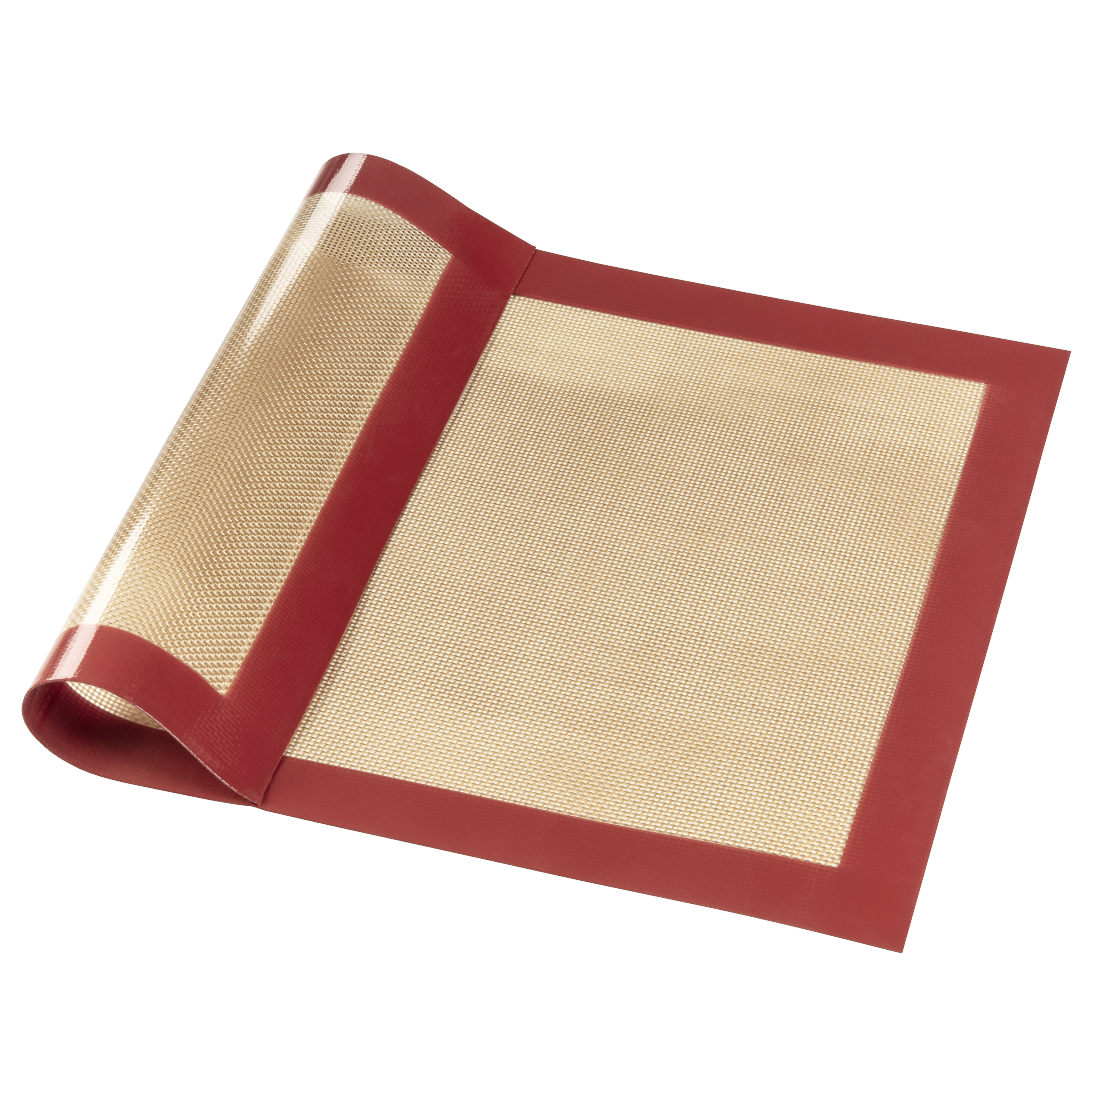 abx High-Res Image - Xavax, Tapis à pâtisserie en silicone, rectangulaire, 40 x 30cm, rouge-marron